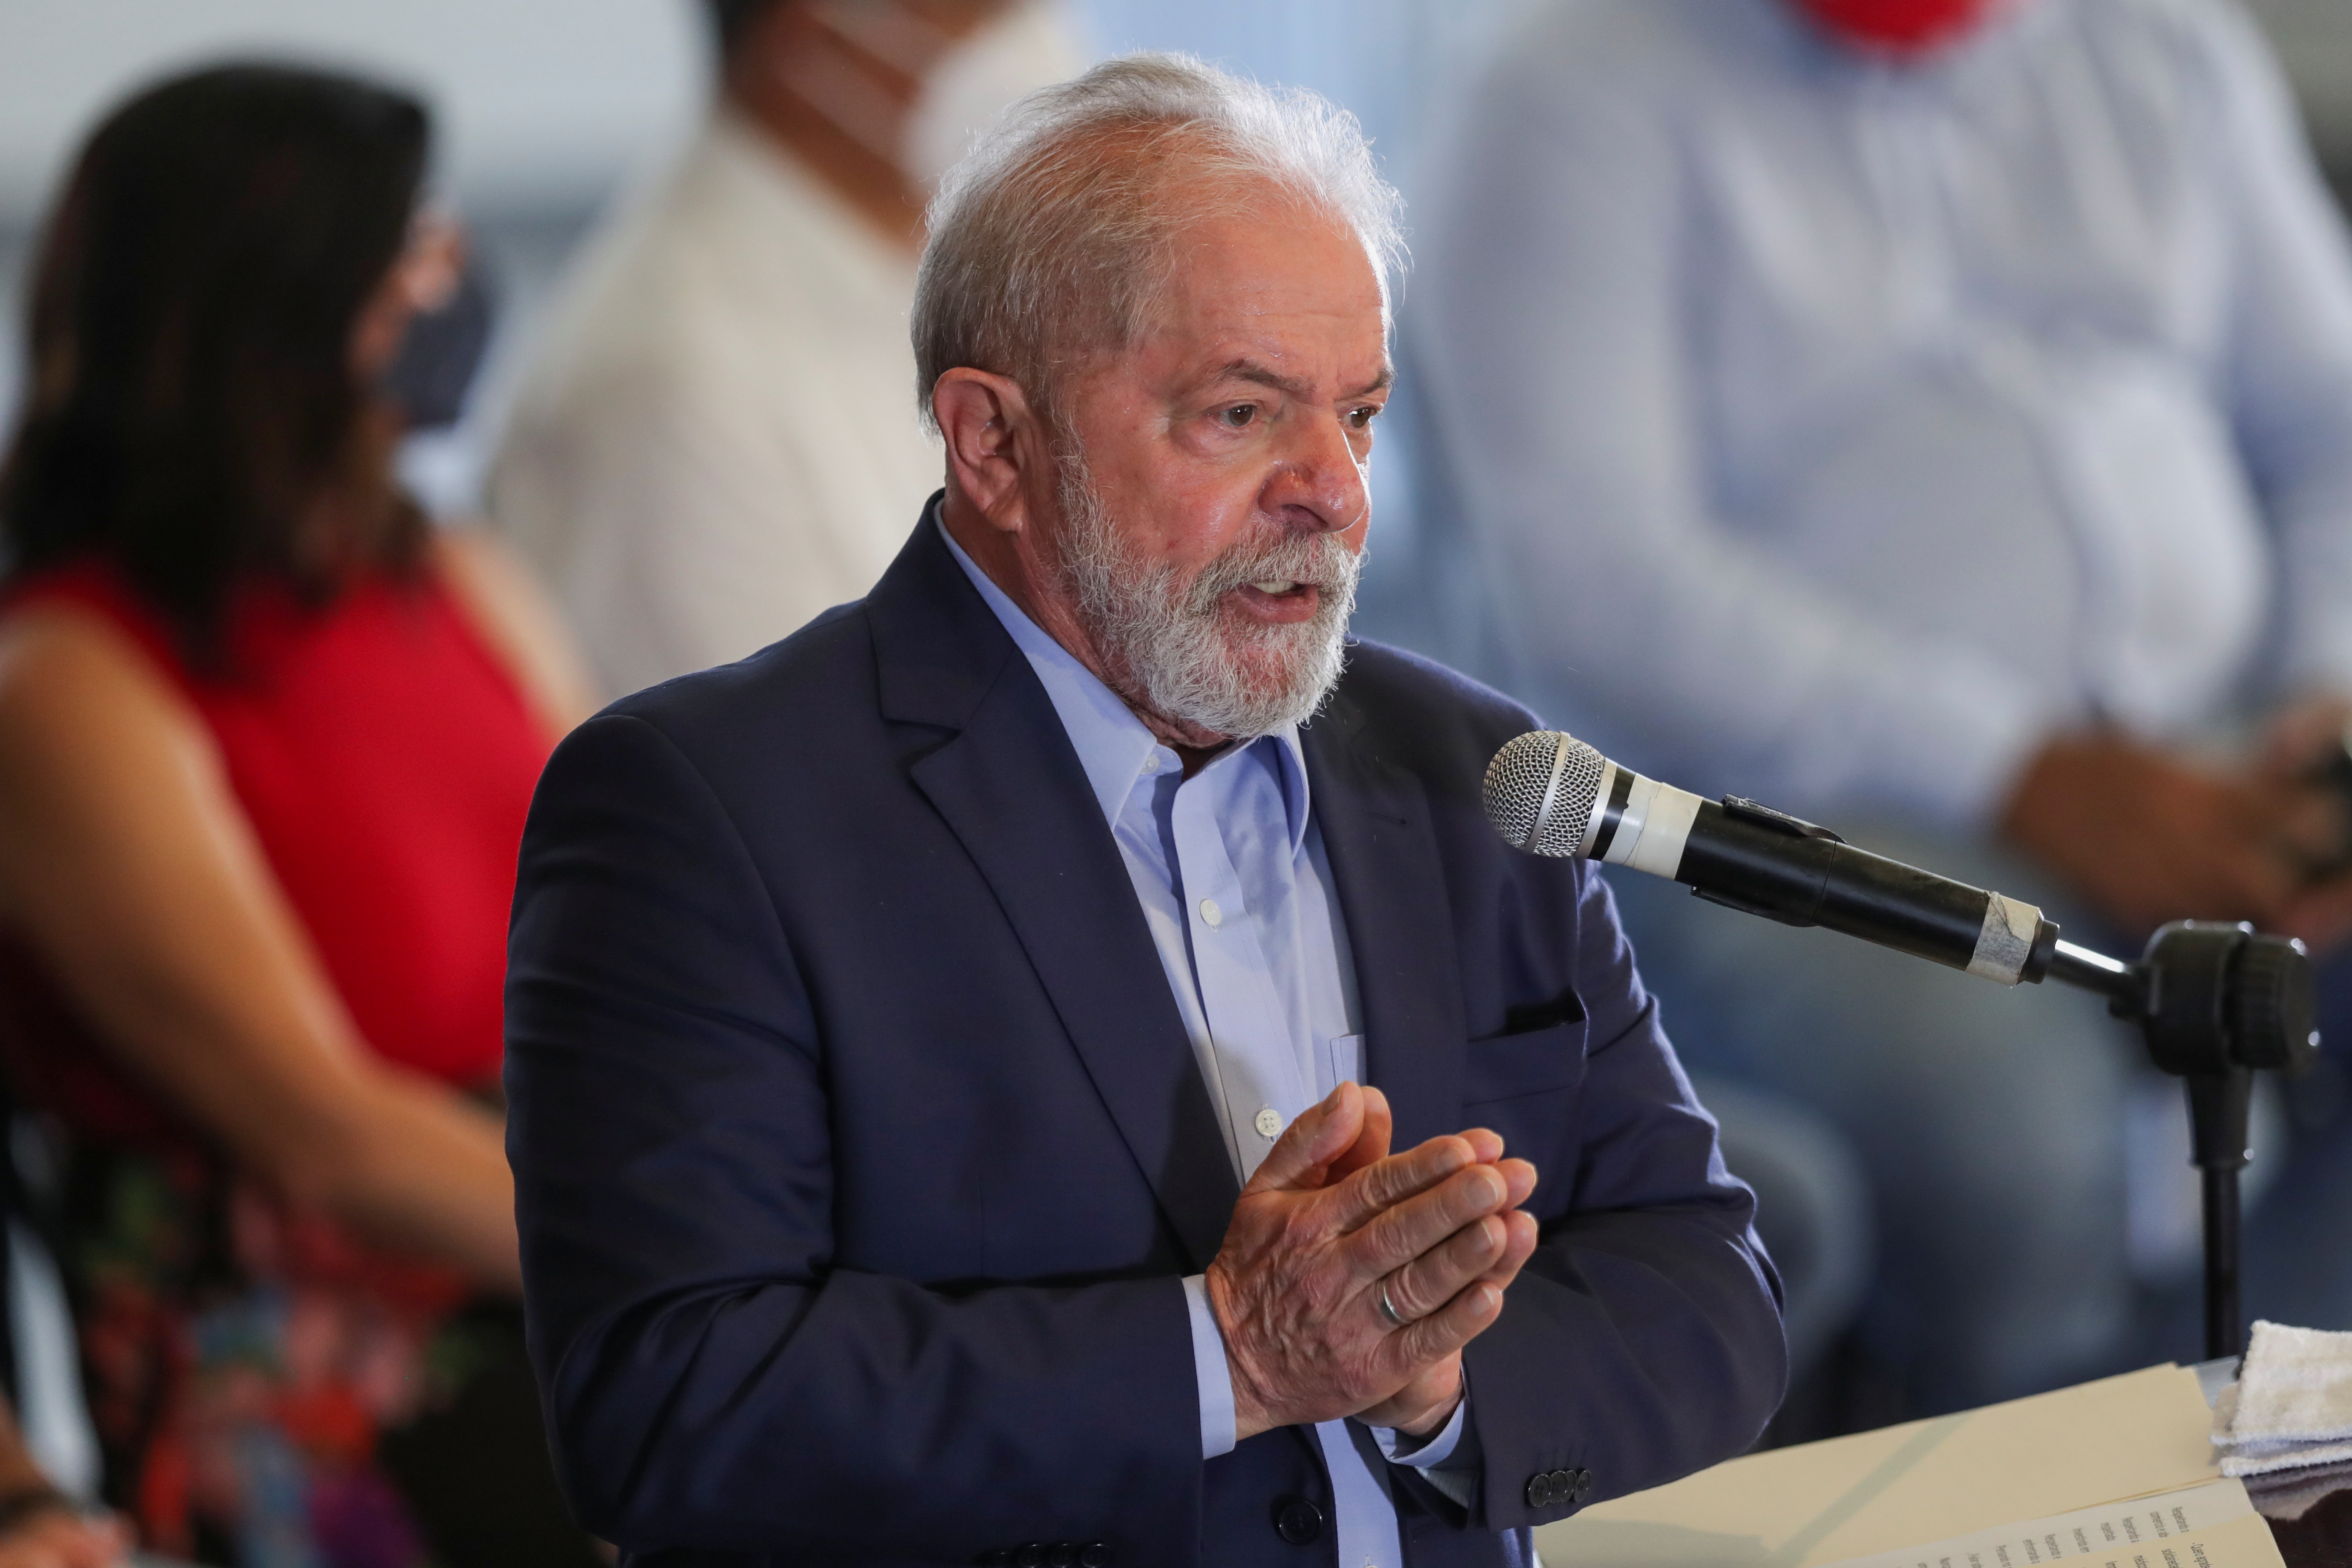 Brazil's former President Lula attends a news conference in Sao Bernardo do Campo